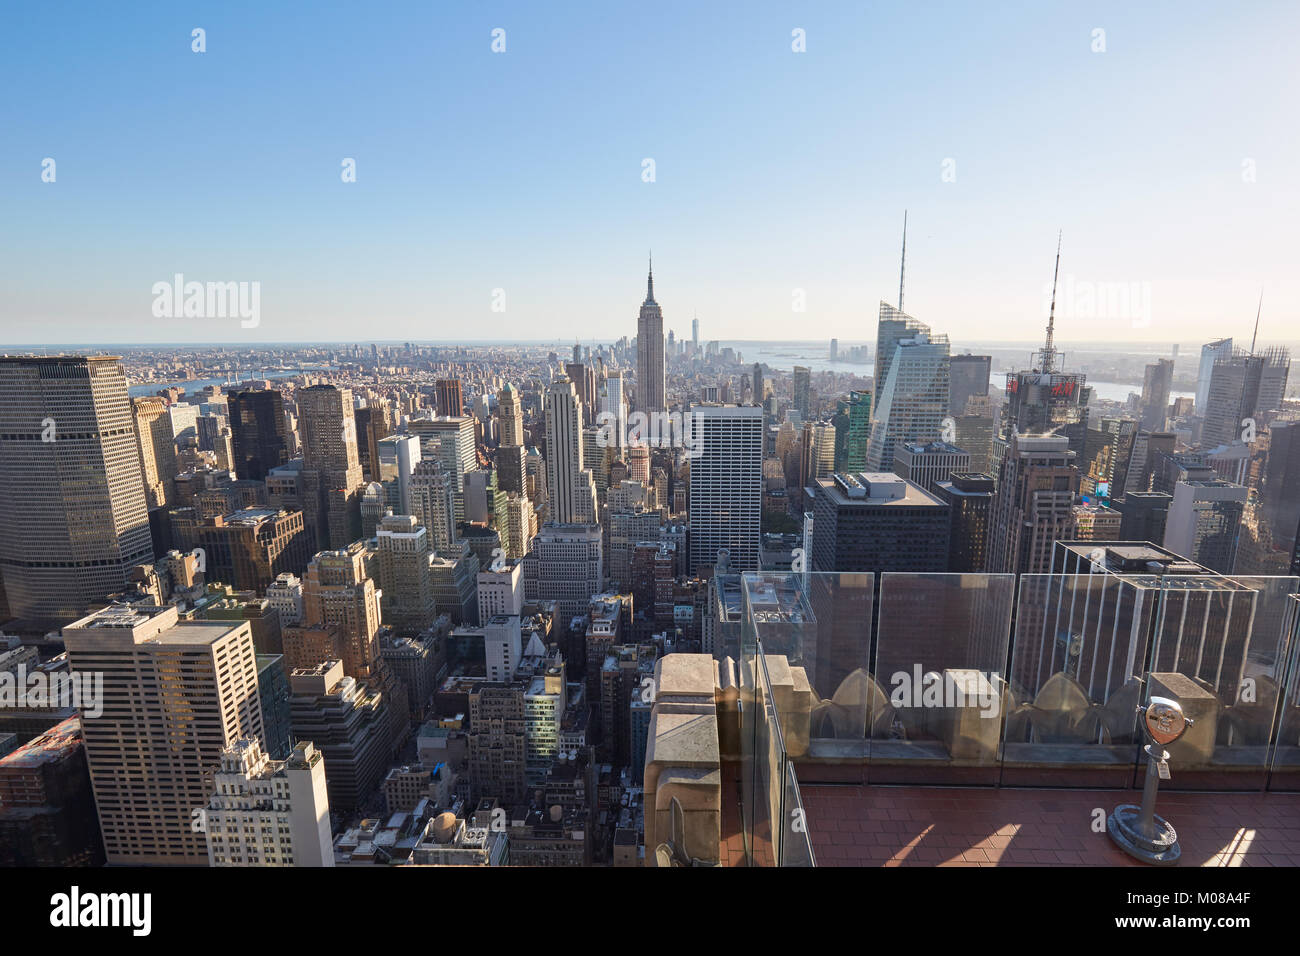 NEW YORK - SEPTEMBRE 12 : terrasse d'observation du Rockefeller Center, vue sur la ville et la ligne d'horizon par une journée ensoleillée, personne le 12 septembre 2016 à New York Banque D'Images